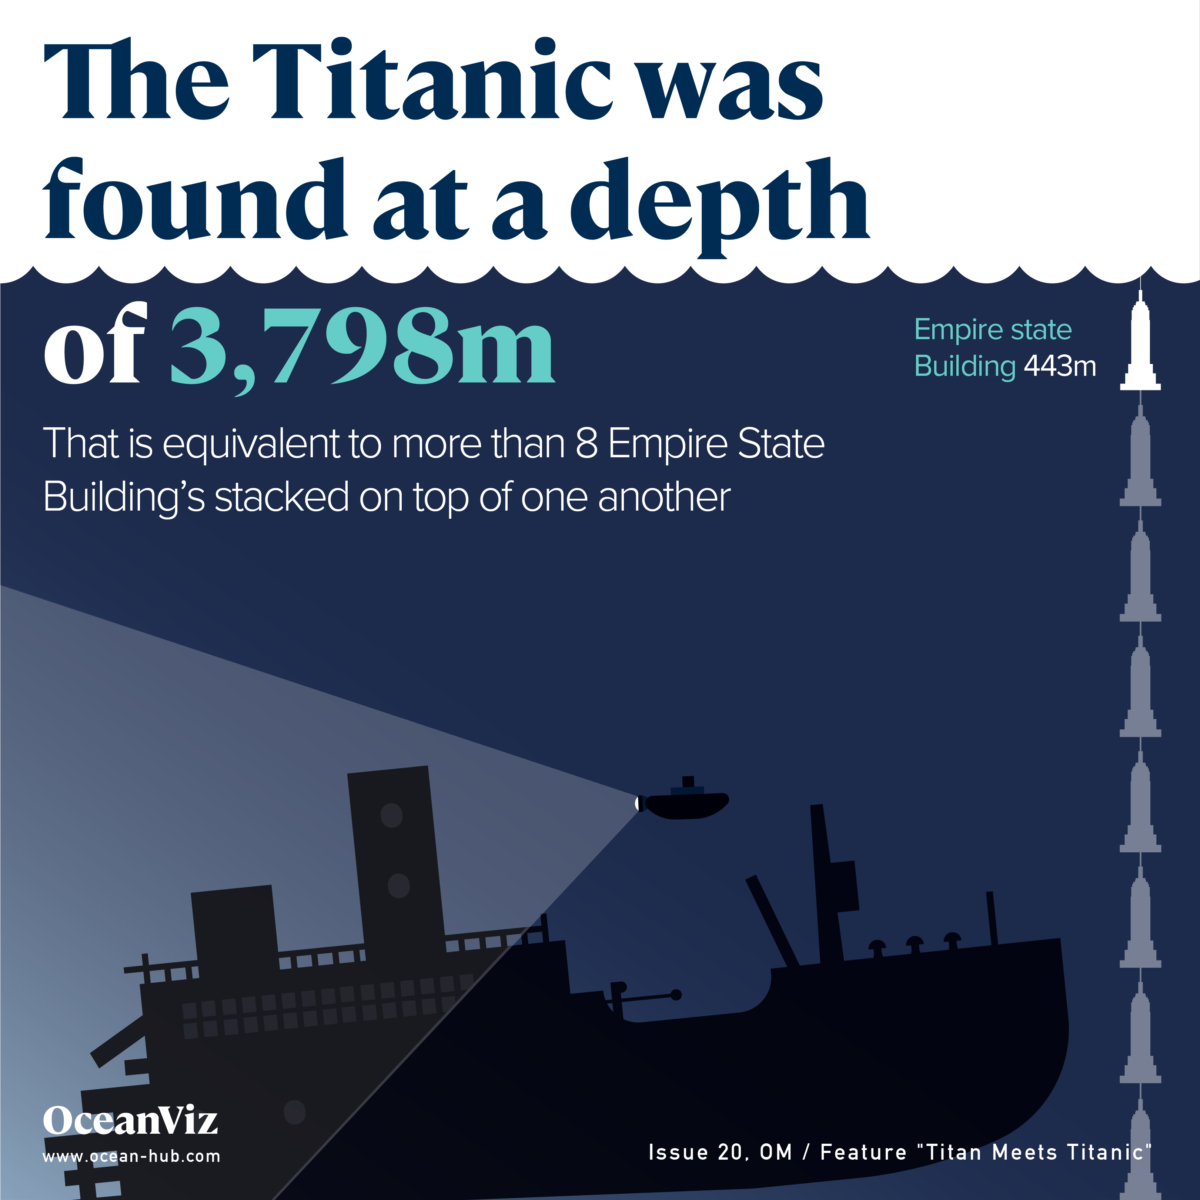 Titanic depth